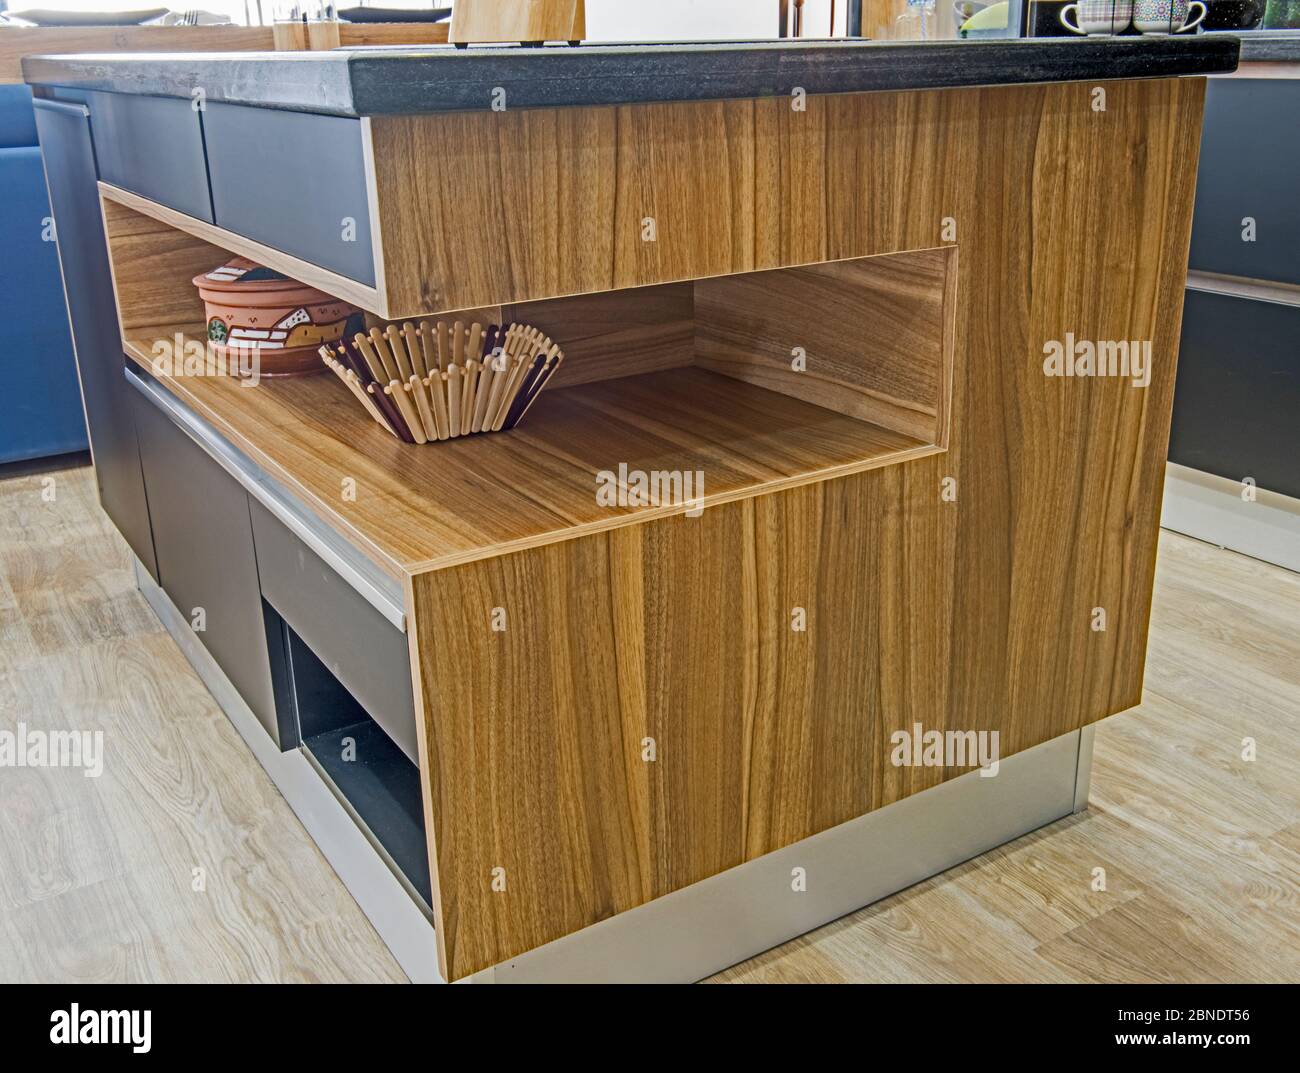 Interior Design Decor Showing Modern Kitchen Island With Wooden Shelf In Luxury Apartment Showroom 2BNDT56 